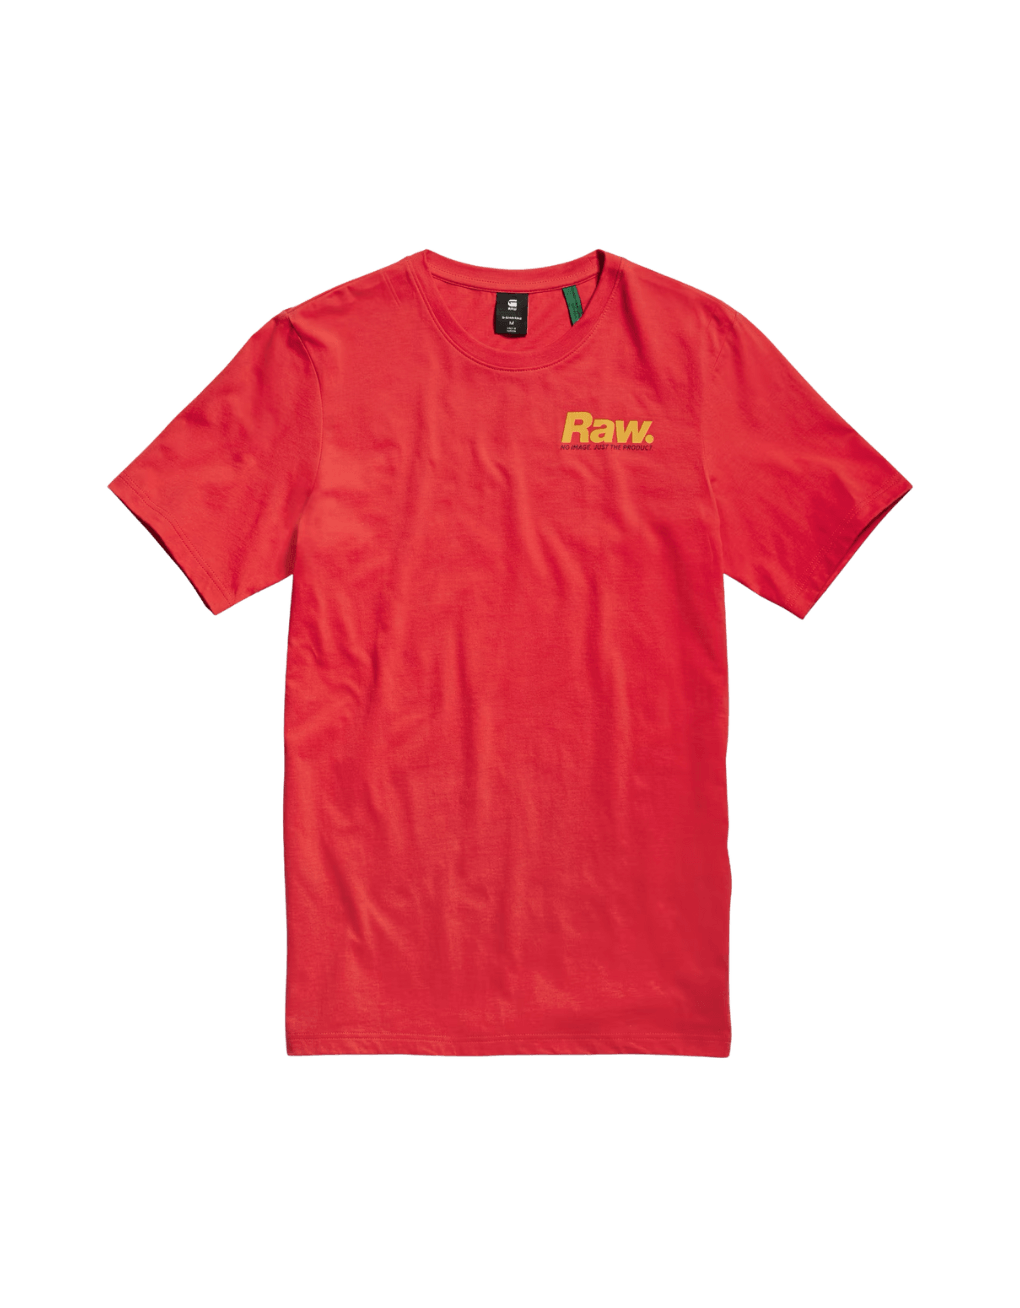 Camiseta de Hombre G-star Photographer Graphic Slim Acid Red - ECRU